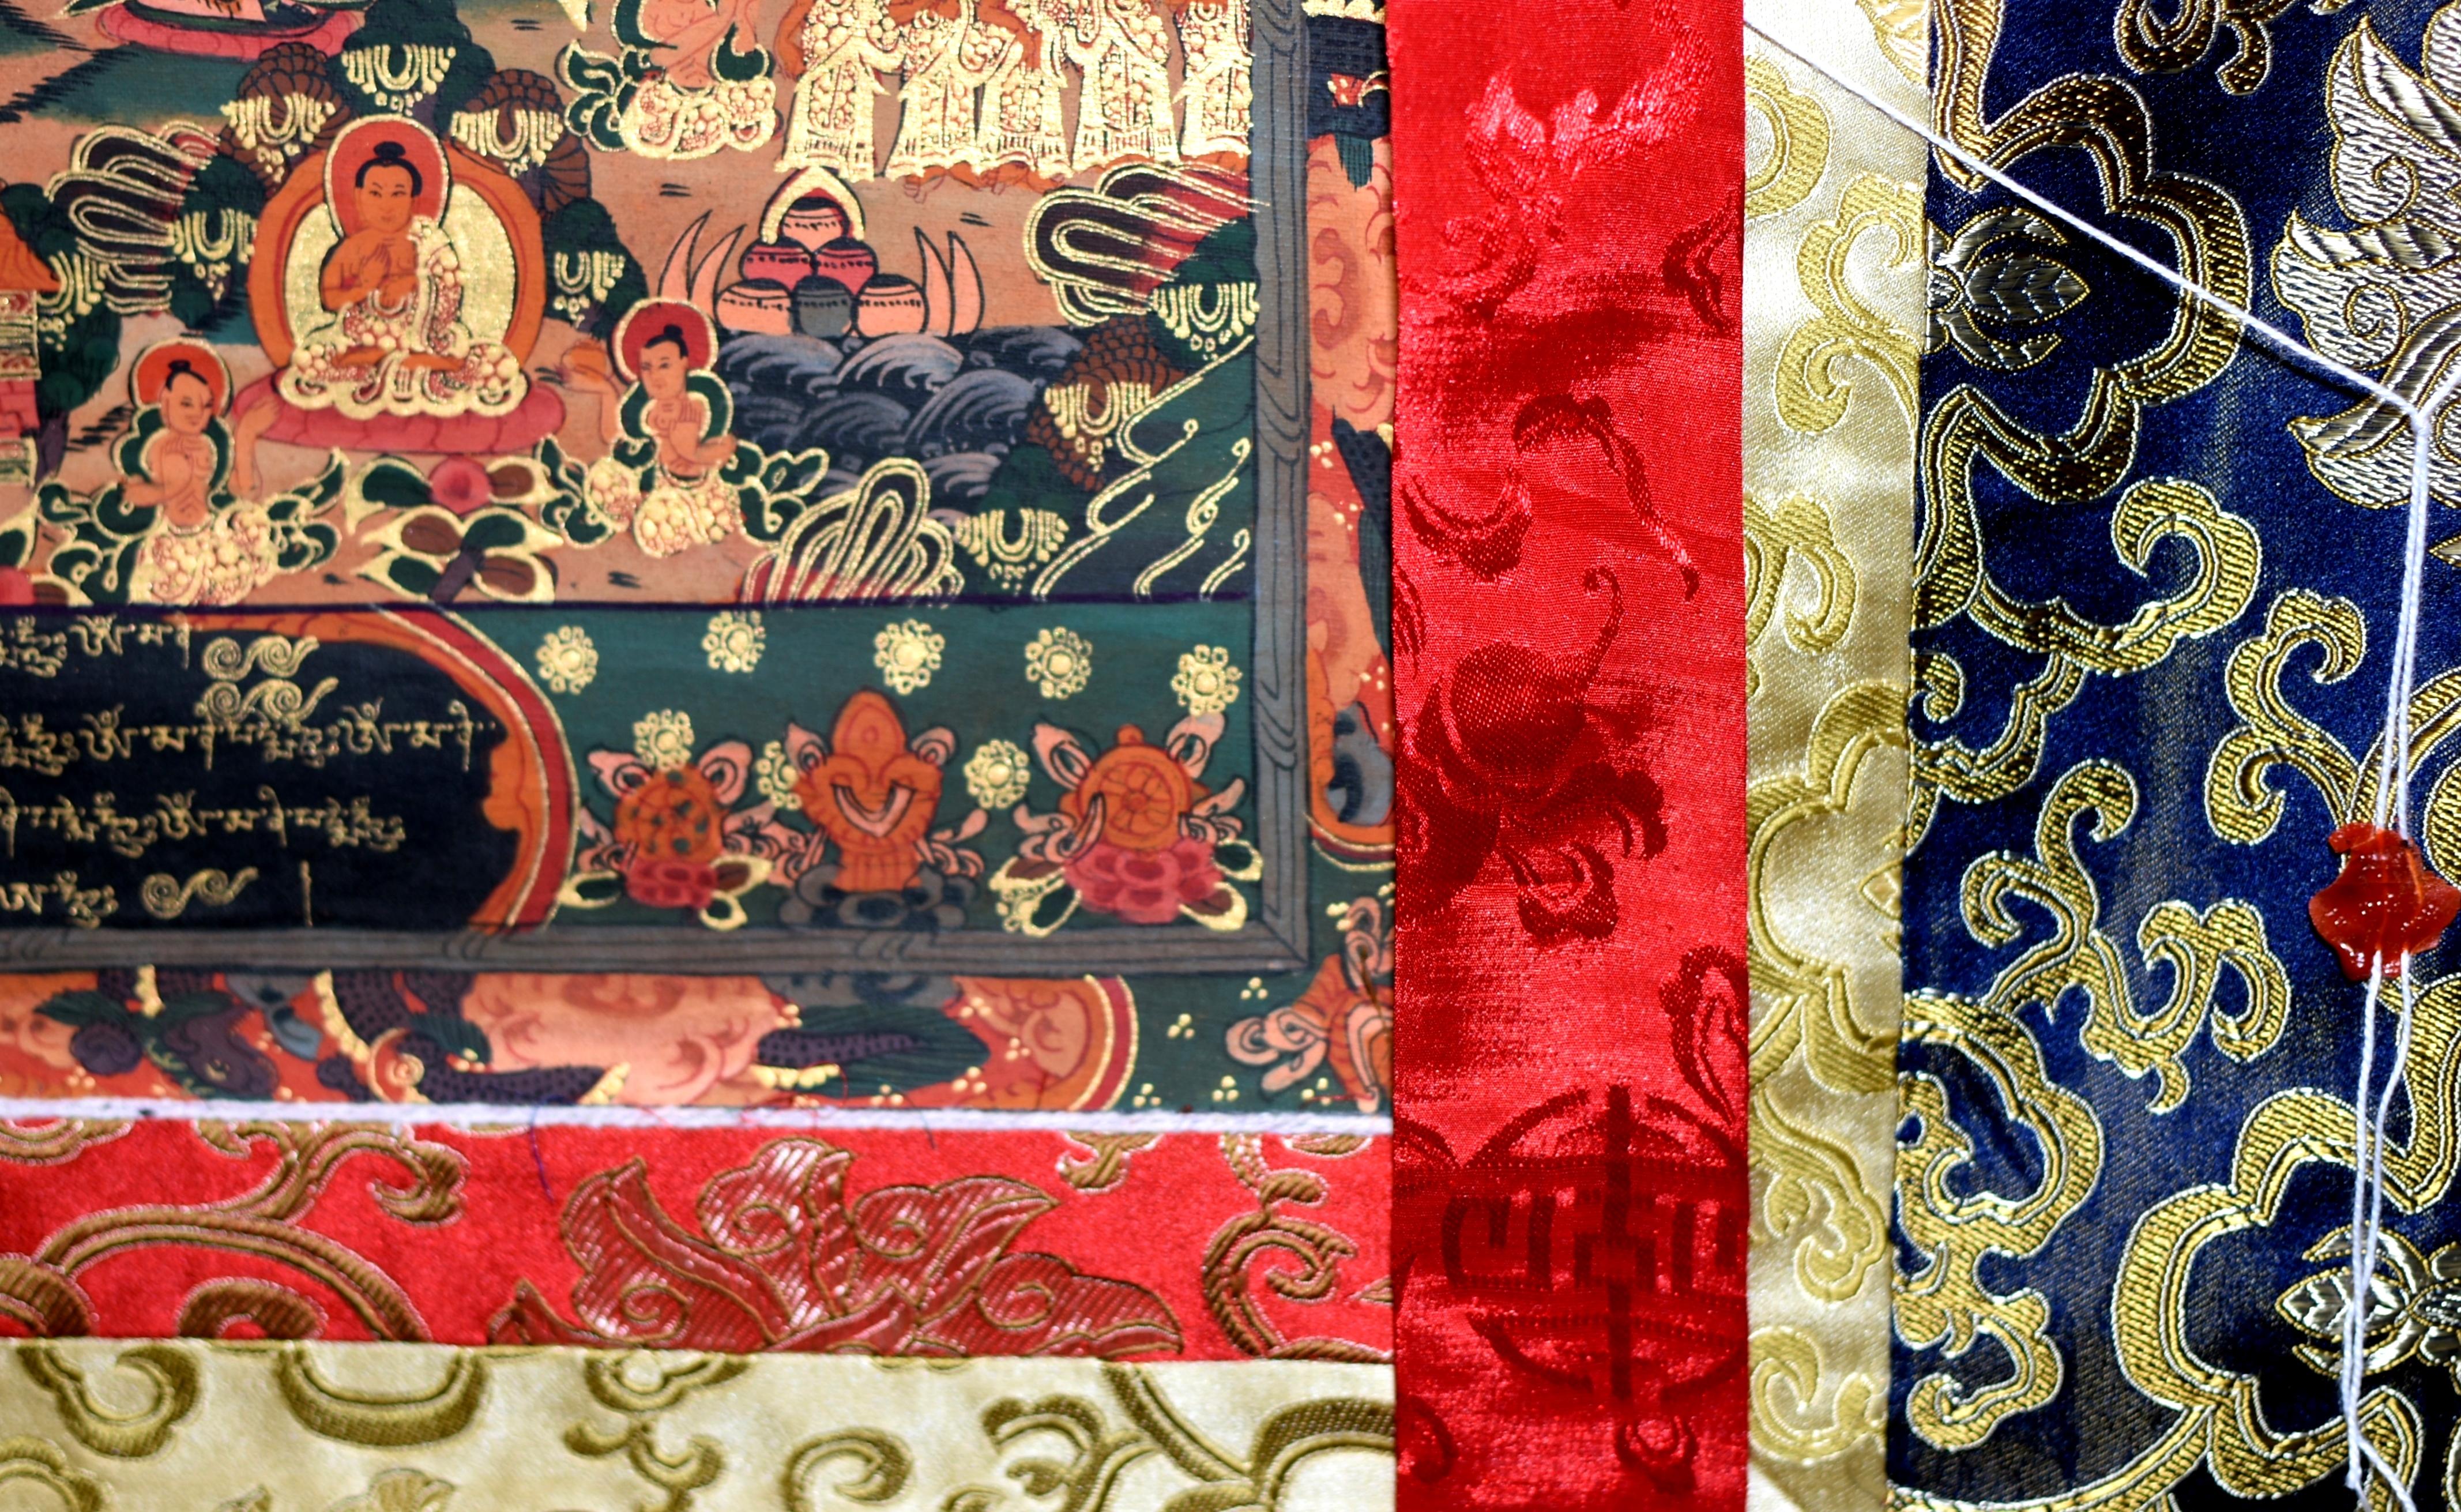 Eine unserer schönsten handgemalten tibetischen Thangkas aus Nepal. Dieses außergewöhnliche Thangka stellt 108 Buddhas mit Gefährten im himmlischen Hof dar, die Zeuge von Amitabhas Erreichen des Nirvana sind. Buddha sitzt in Dhyana-Asana auf einem